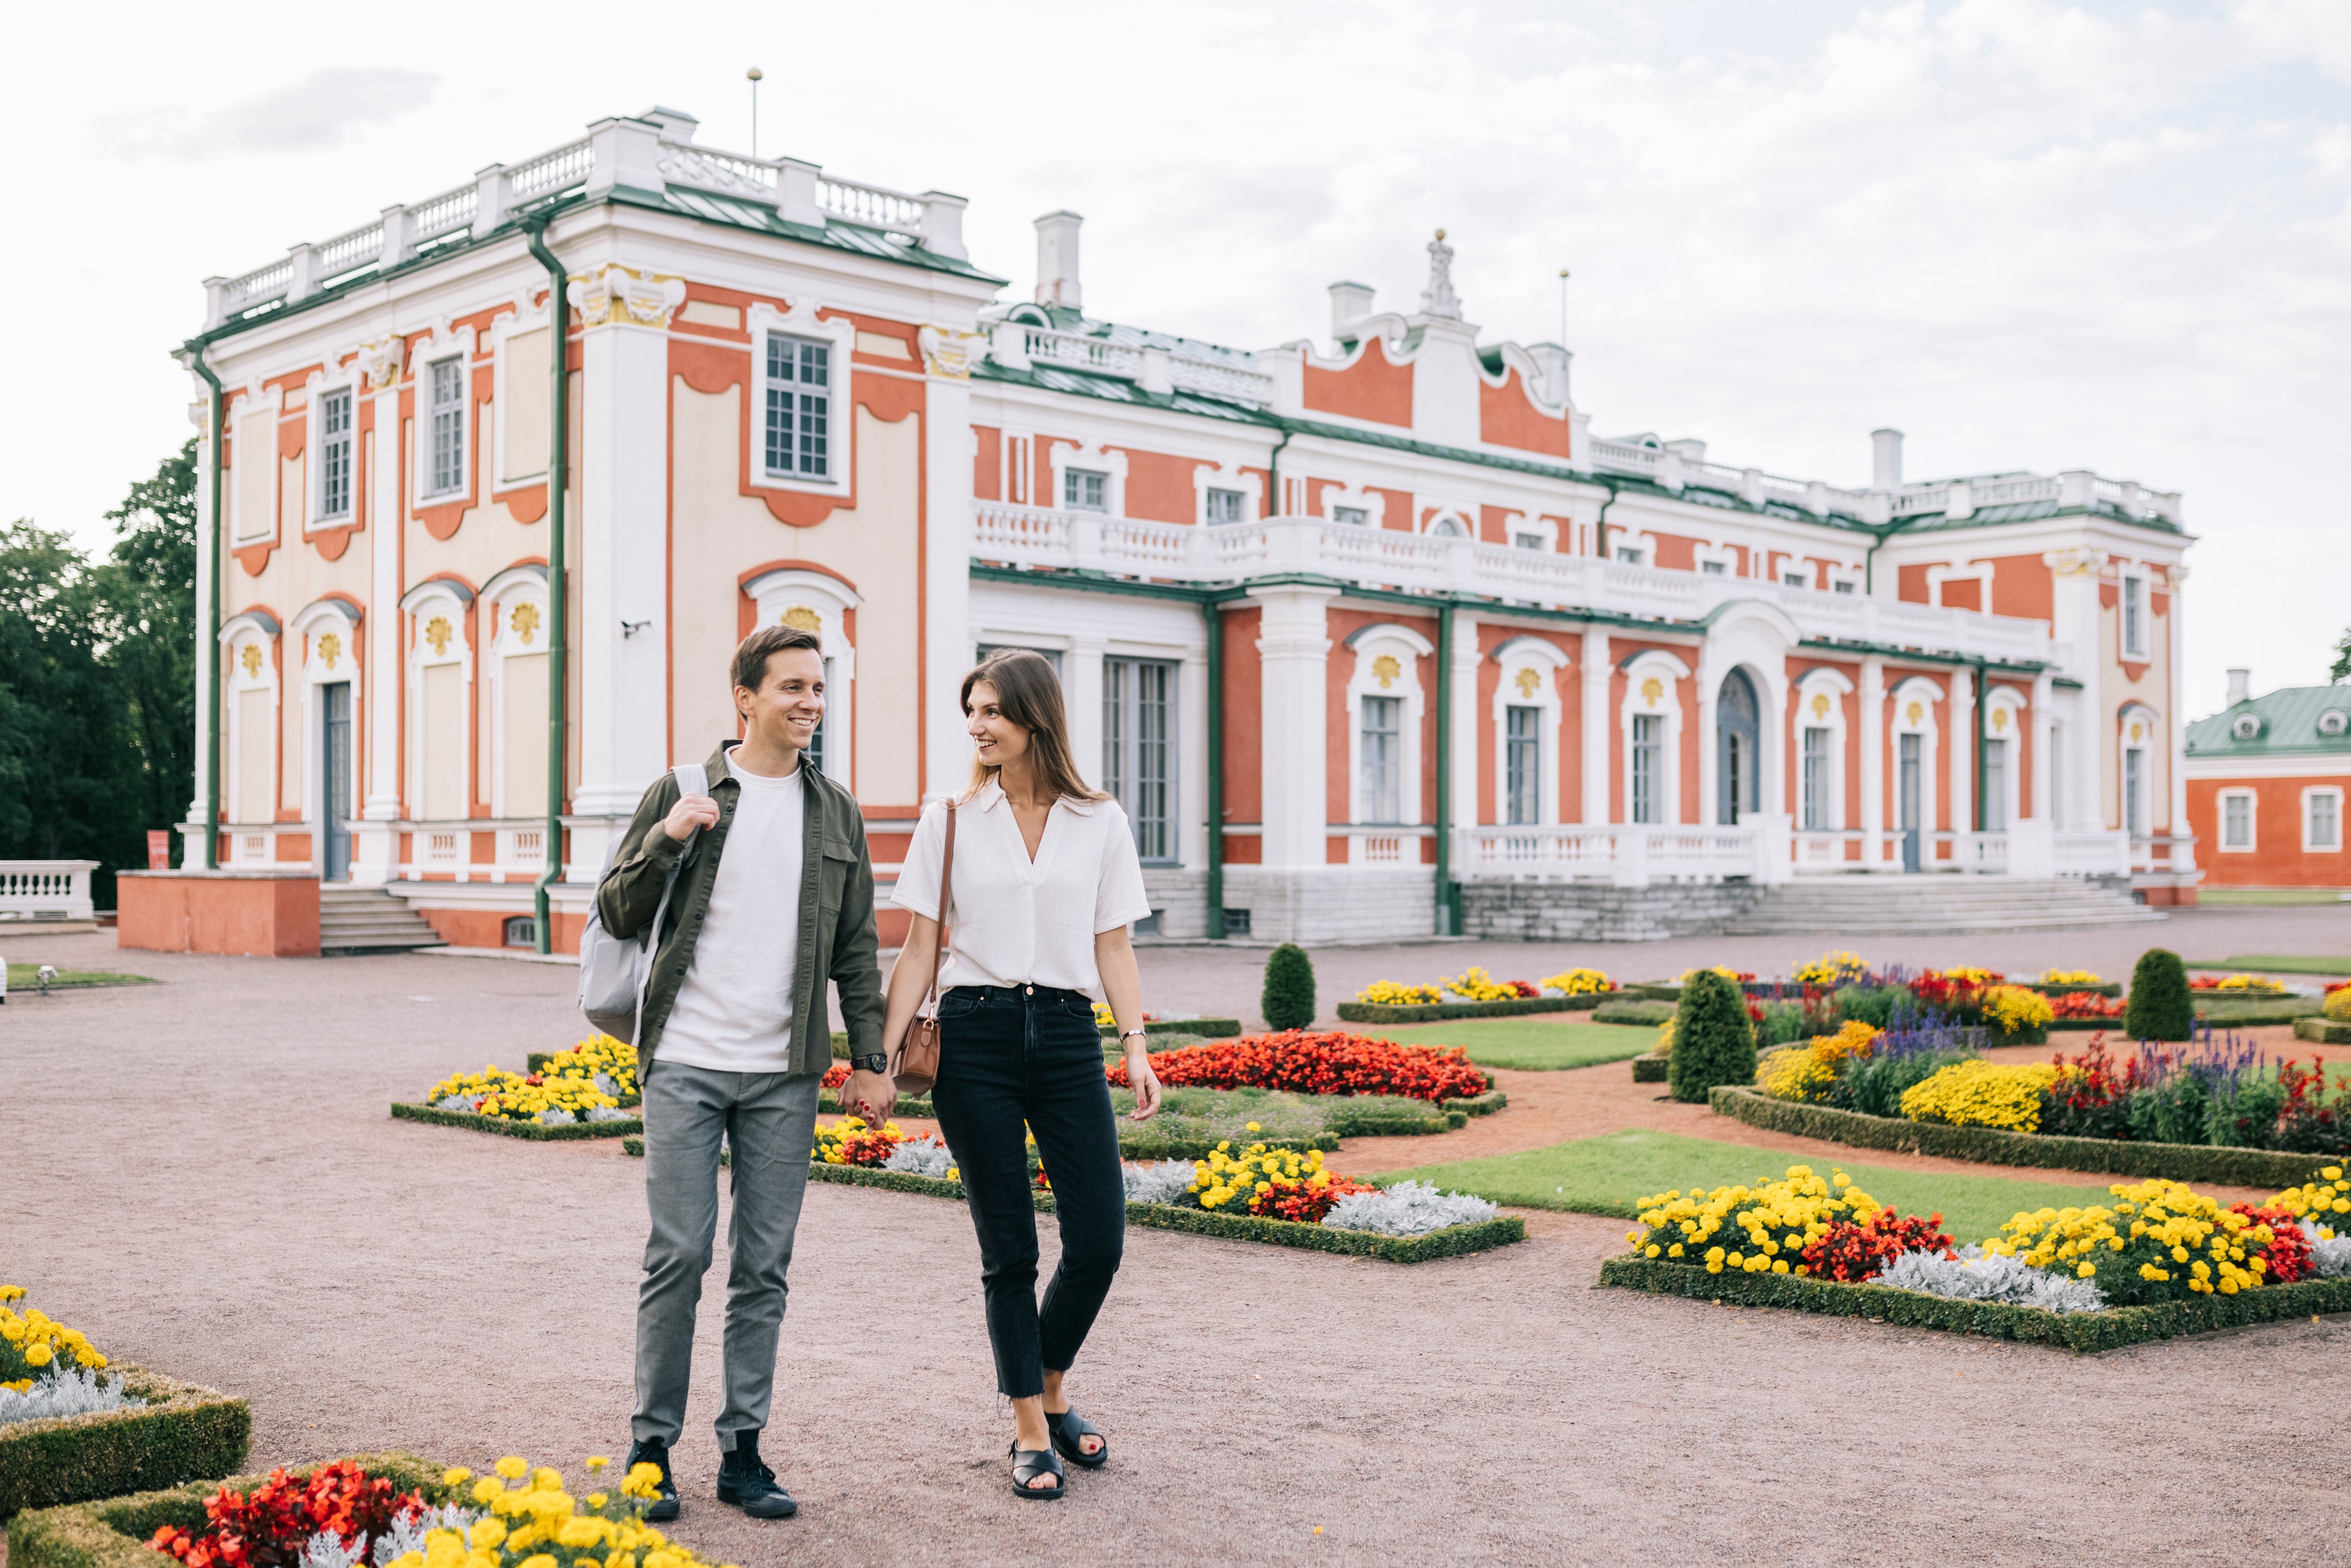 Kadriorg-puisto on Viron näyttävin palatsi- ja kaupunkipuisto, joka kattaa noin 70 hehtaarin alueen. Puistoa alettiin rakentaa vuonna 1718 Pietari Suu